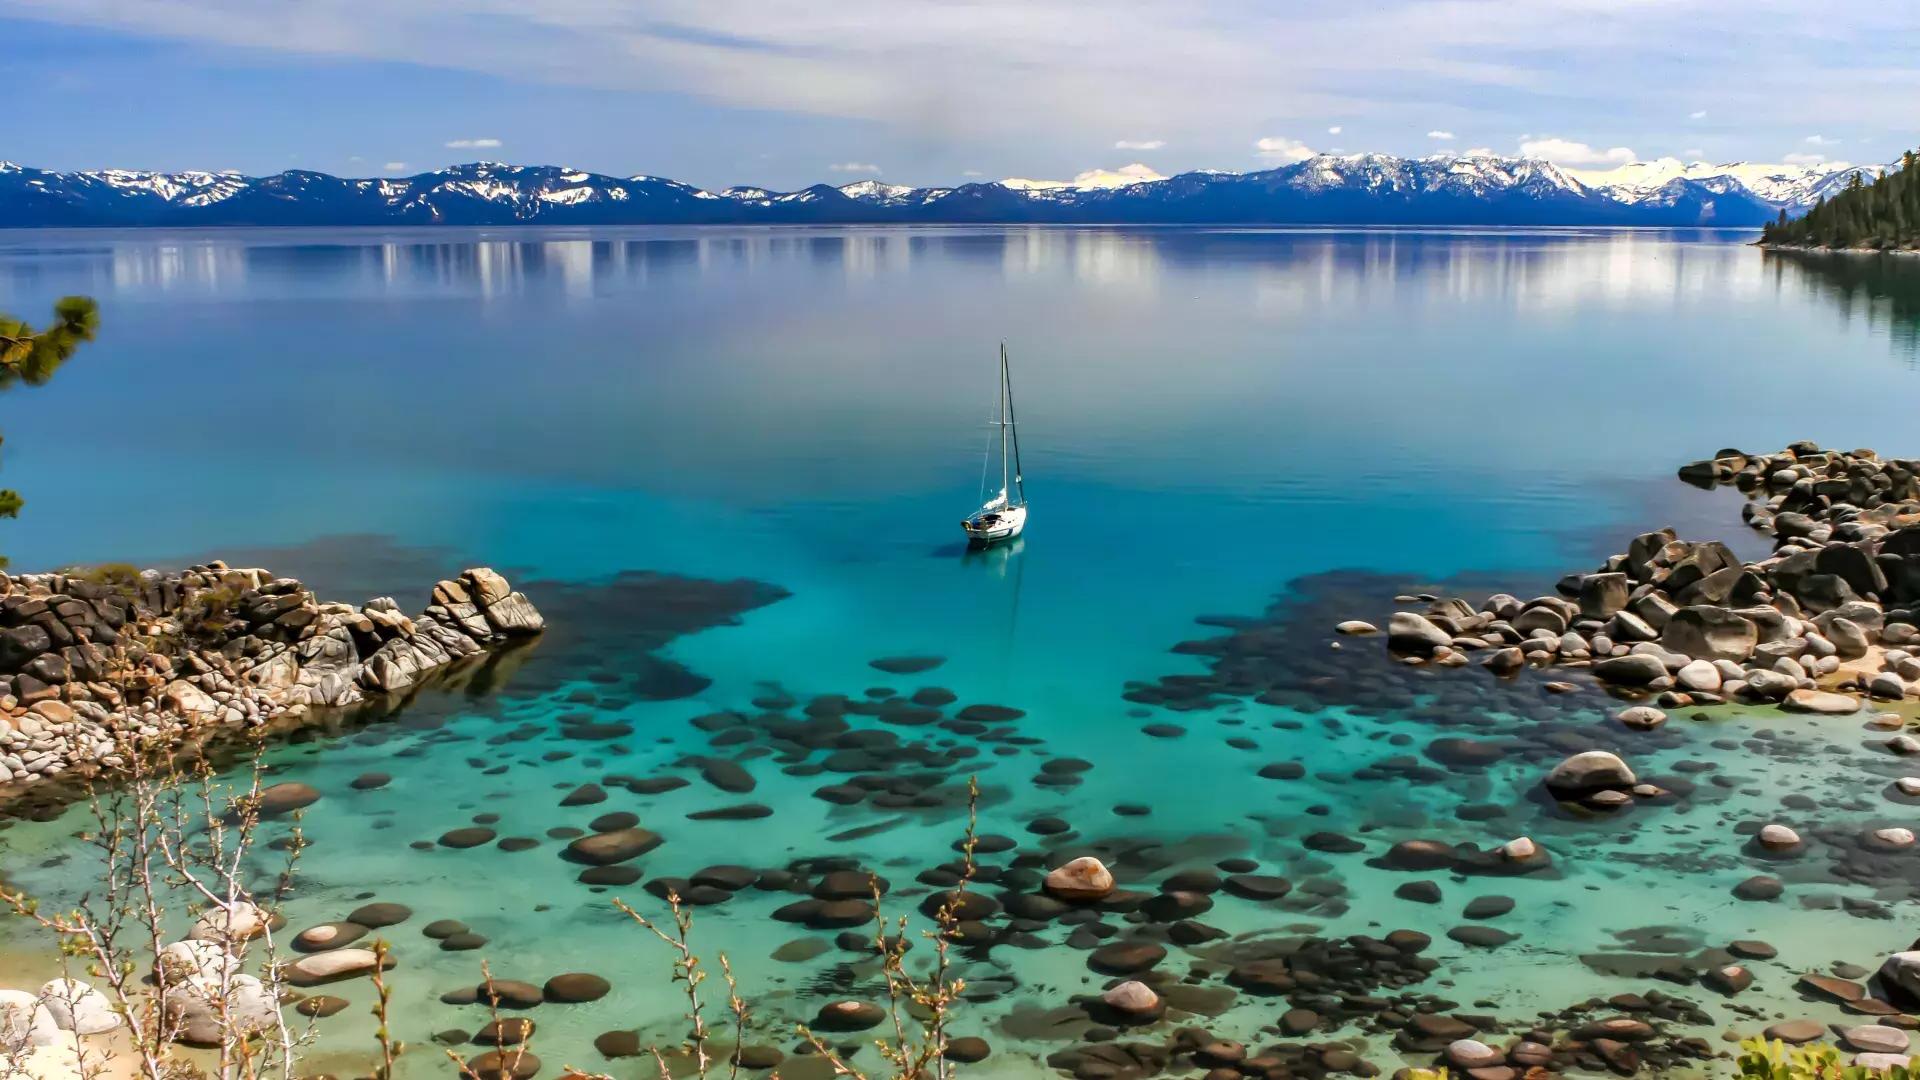 Kristallklares blaues Wasser des Lake Tahoe